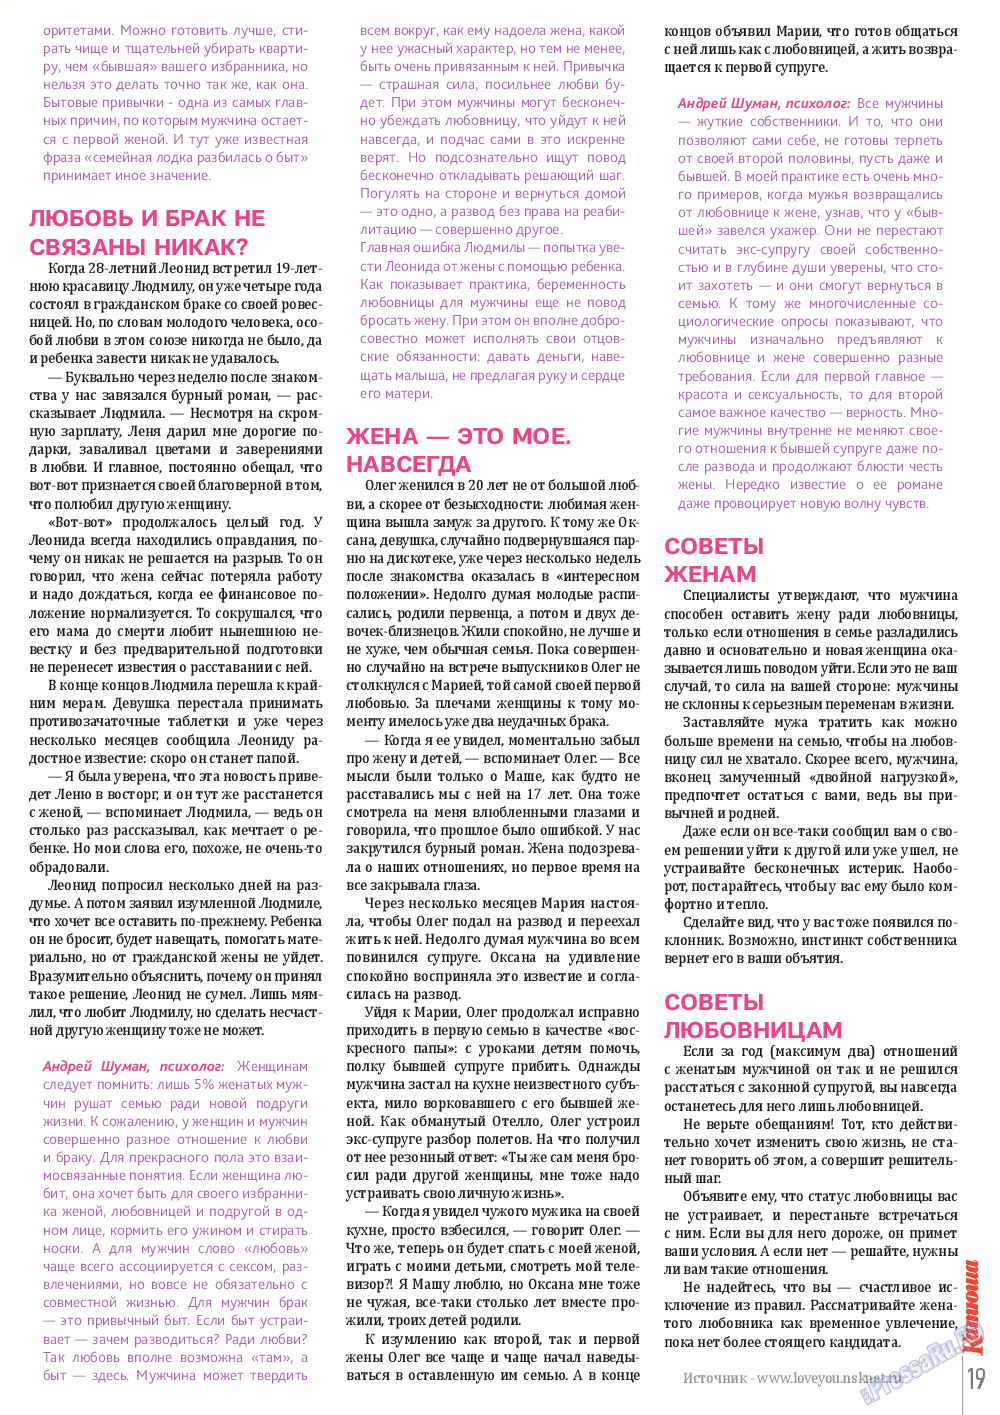 Катюша (журнал). 2014 год, номер 41, стр. 19